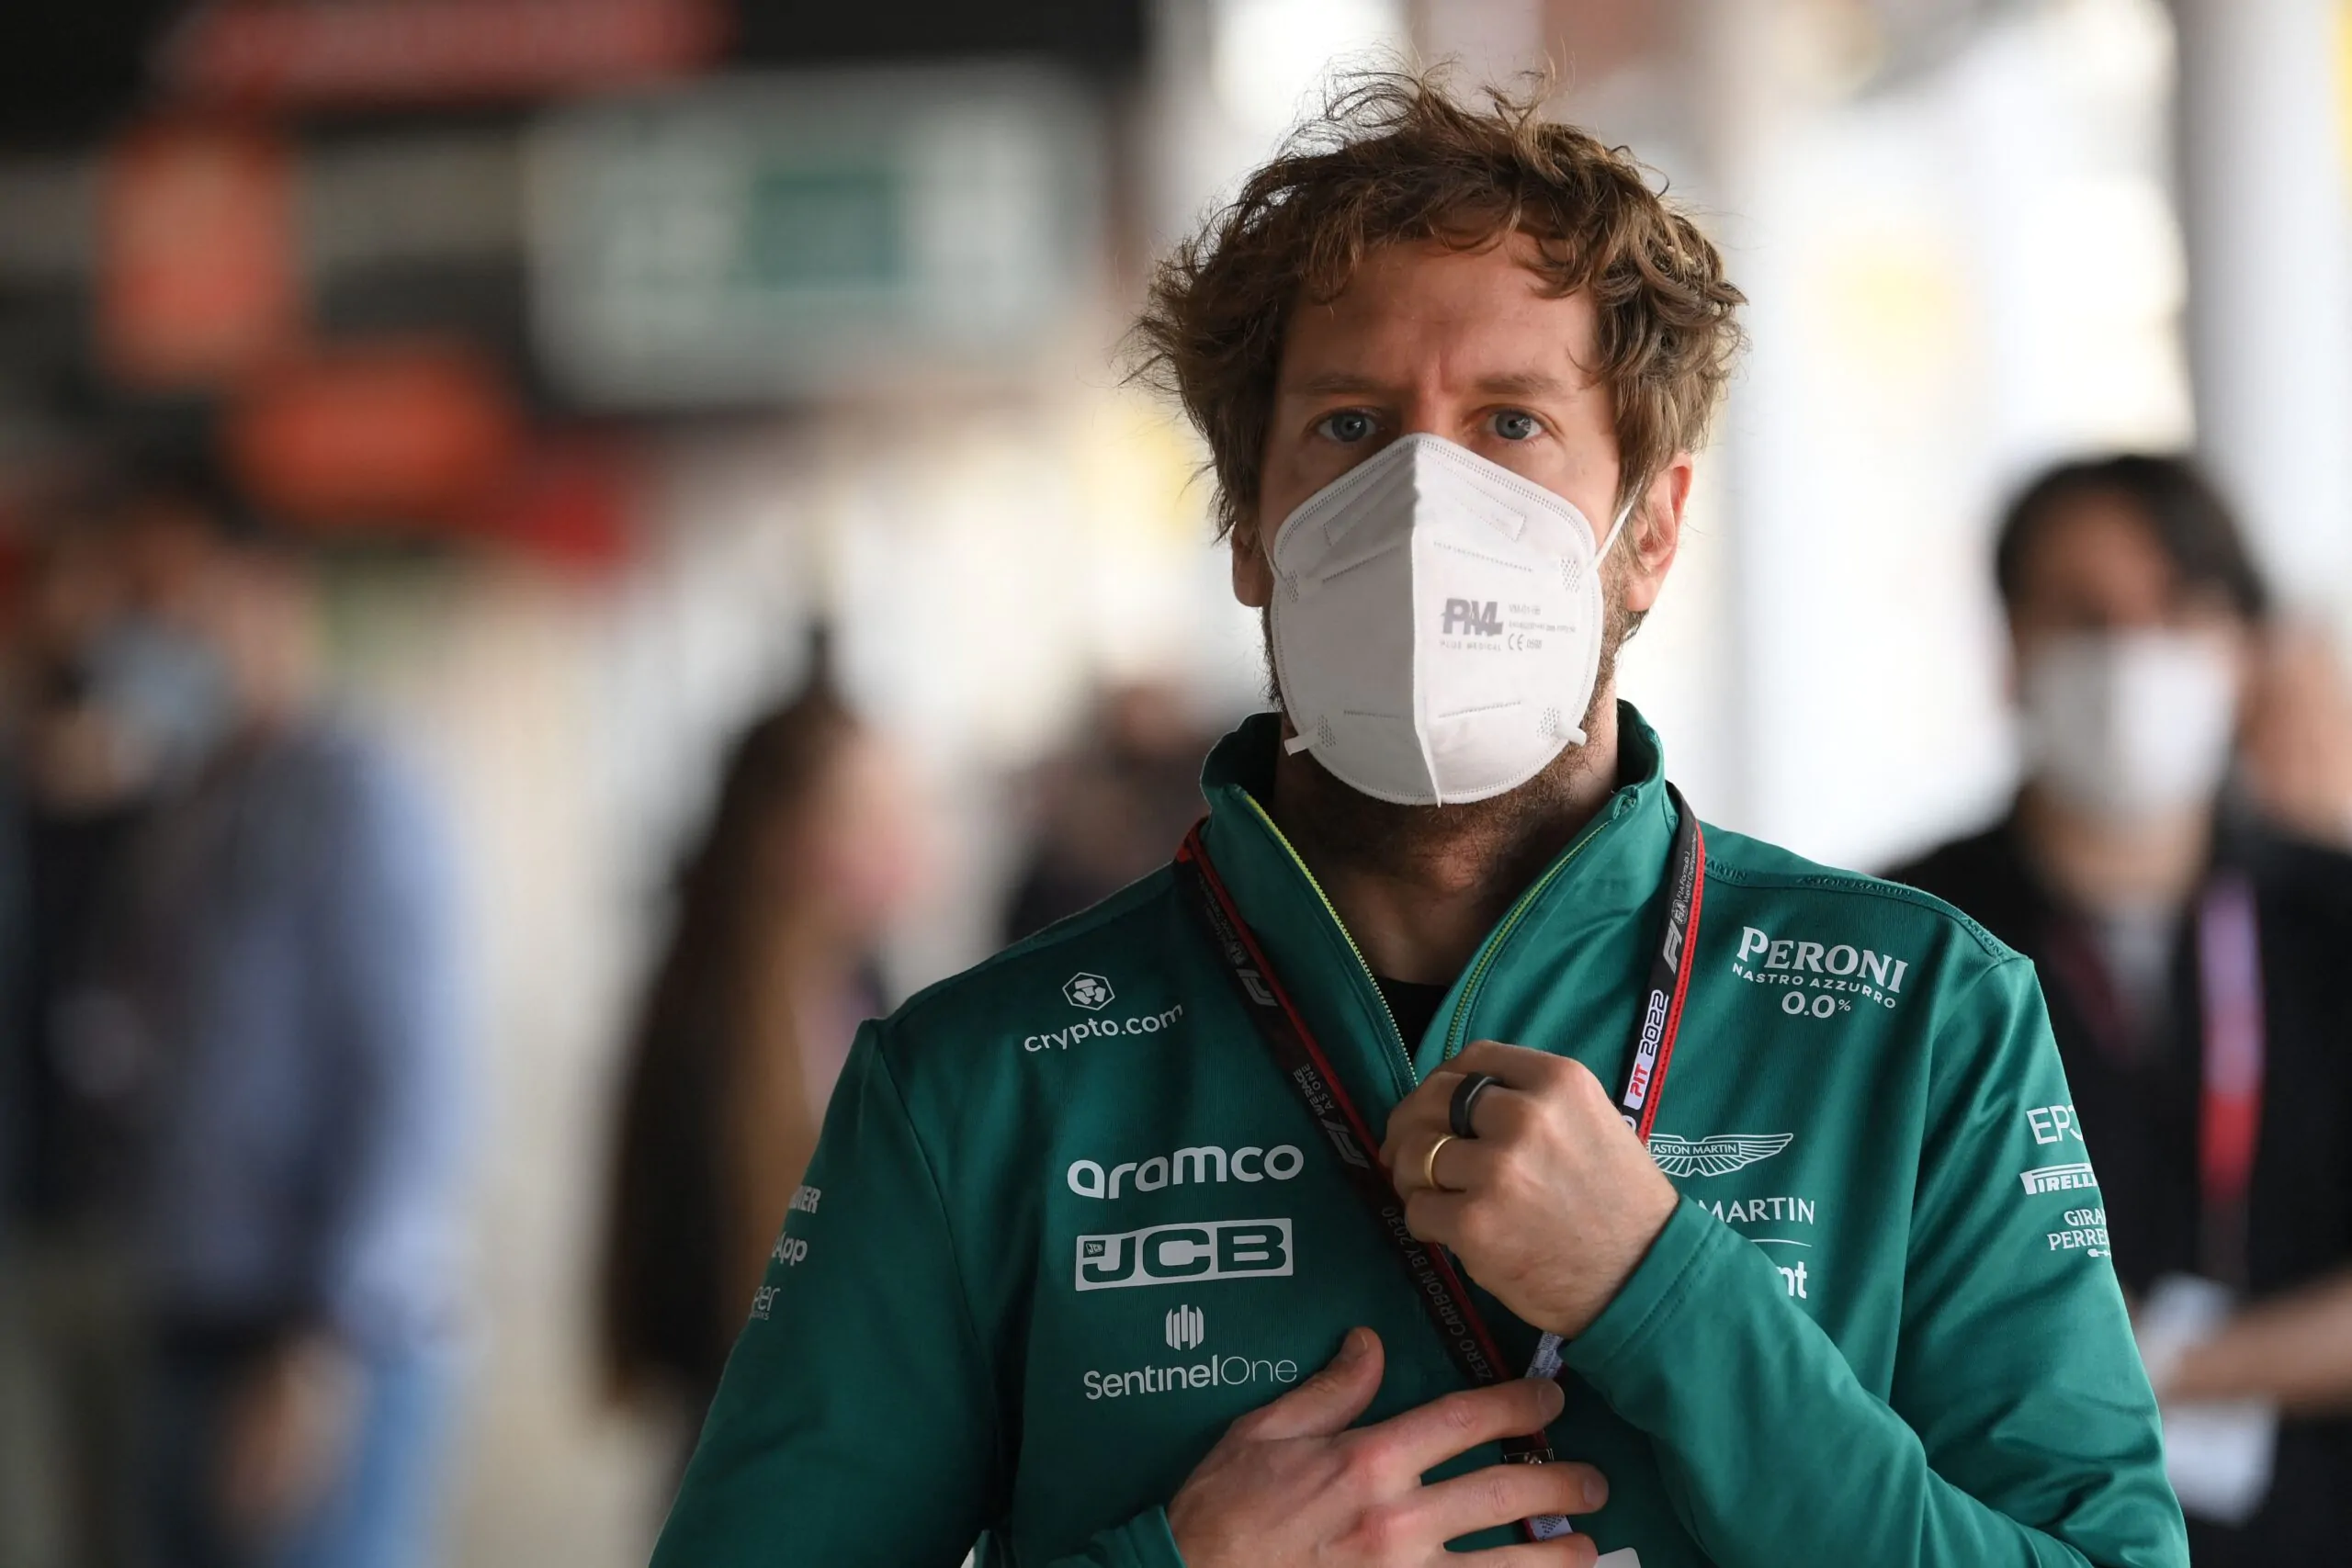 La Formula 1 saluta Vettel: l’addio di un campione umile